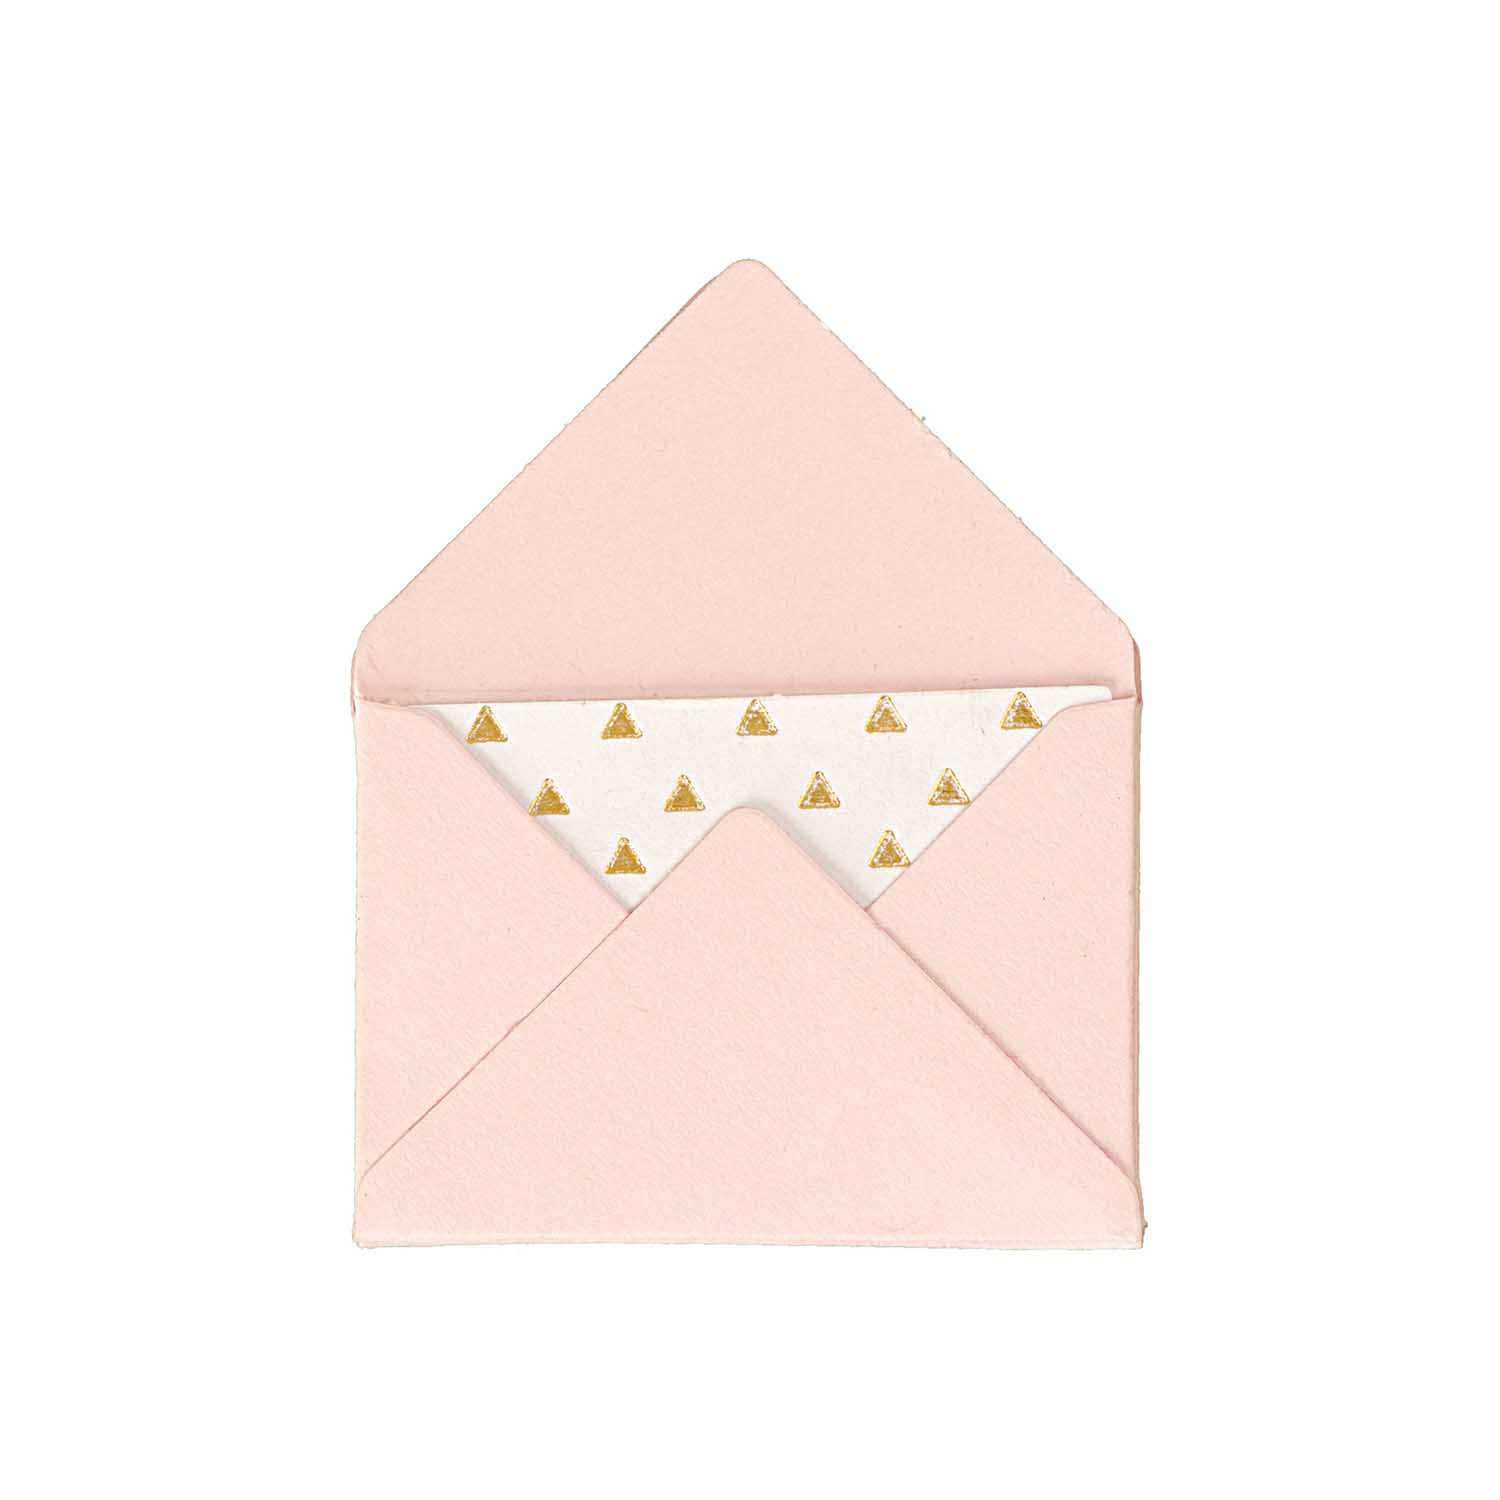 NEU Mini Briefumschläge & Karten, 3 x 4,5 cm, 10 Stück, Rosa - Hot Foil Gold